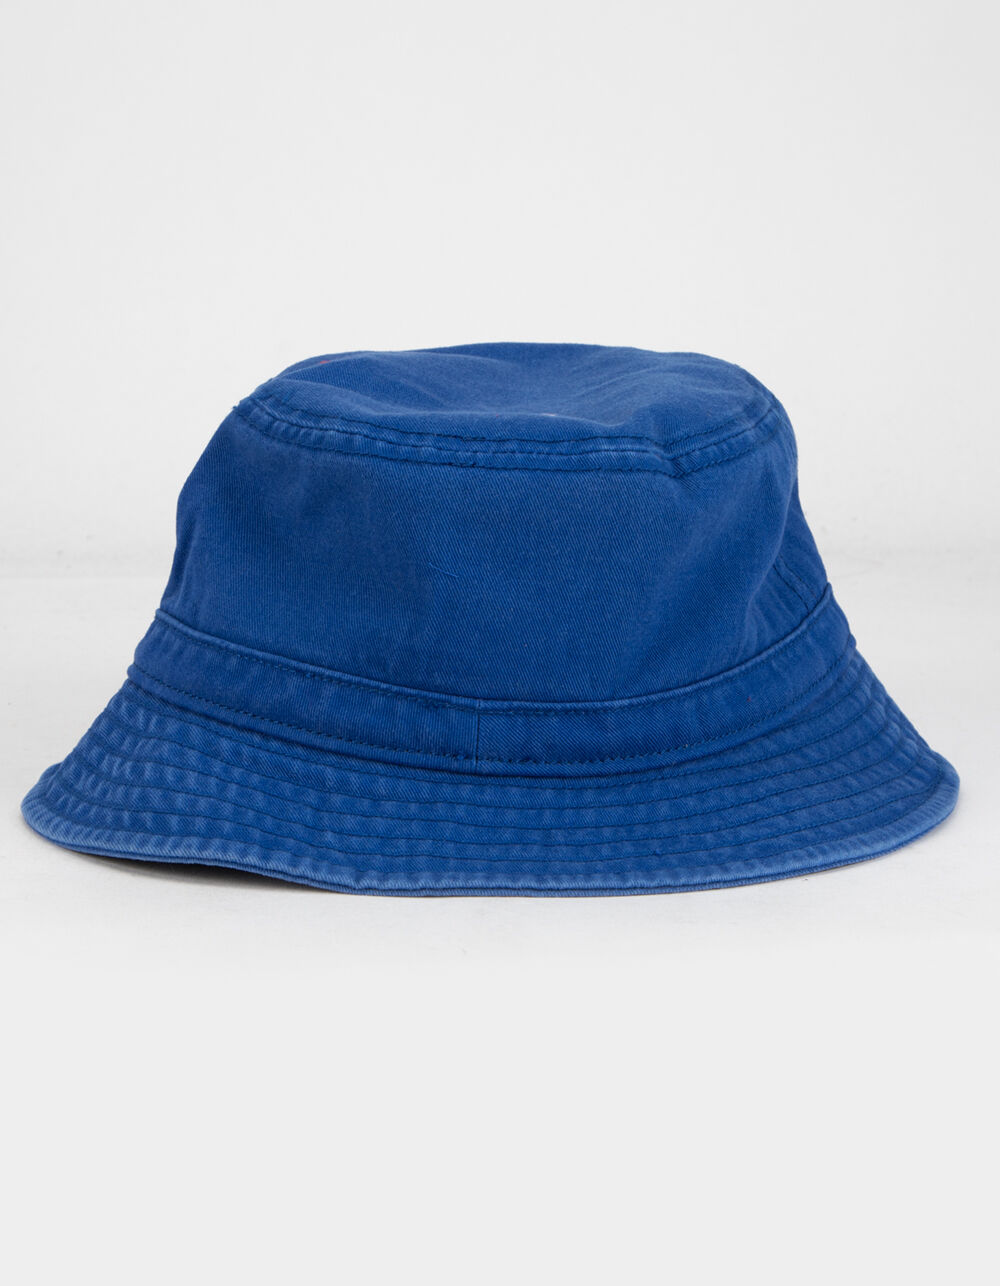 ADIDAS Originals Washed Blue Bucket Hat - BLUE | Tillys